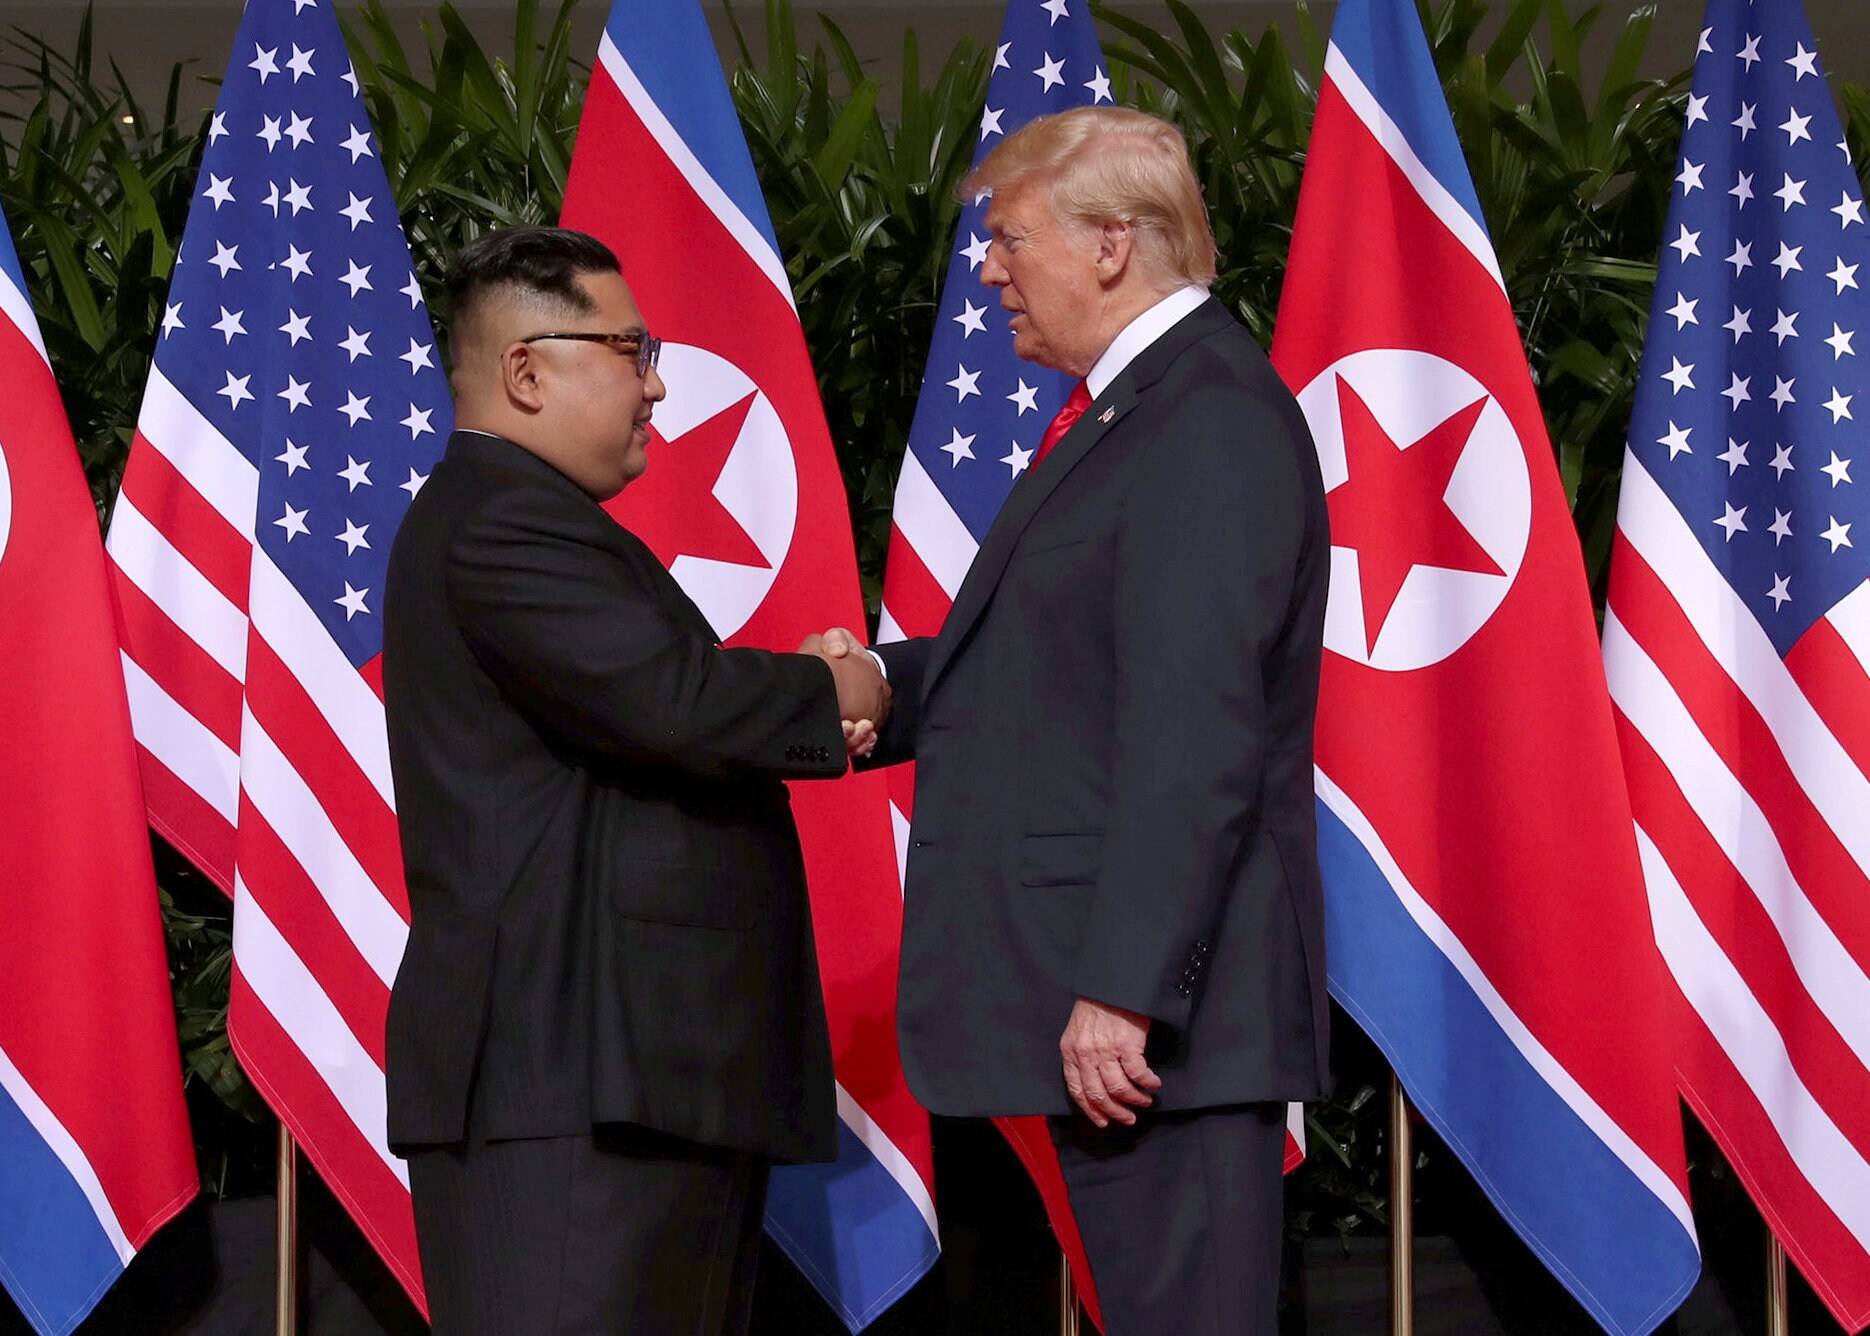 Washington Post: "Achter de schermen is Trump ronduit gefrustreerd over Kim Jong-un"